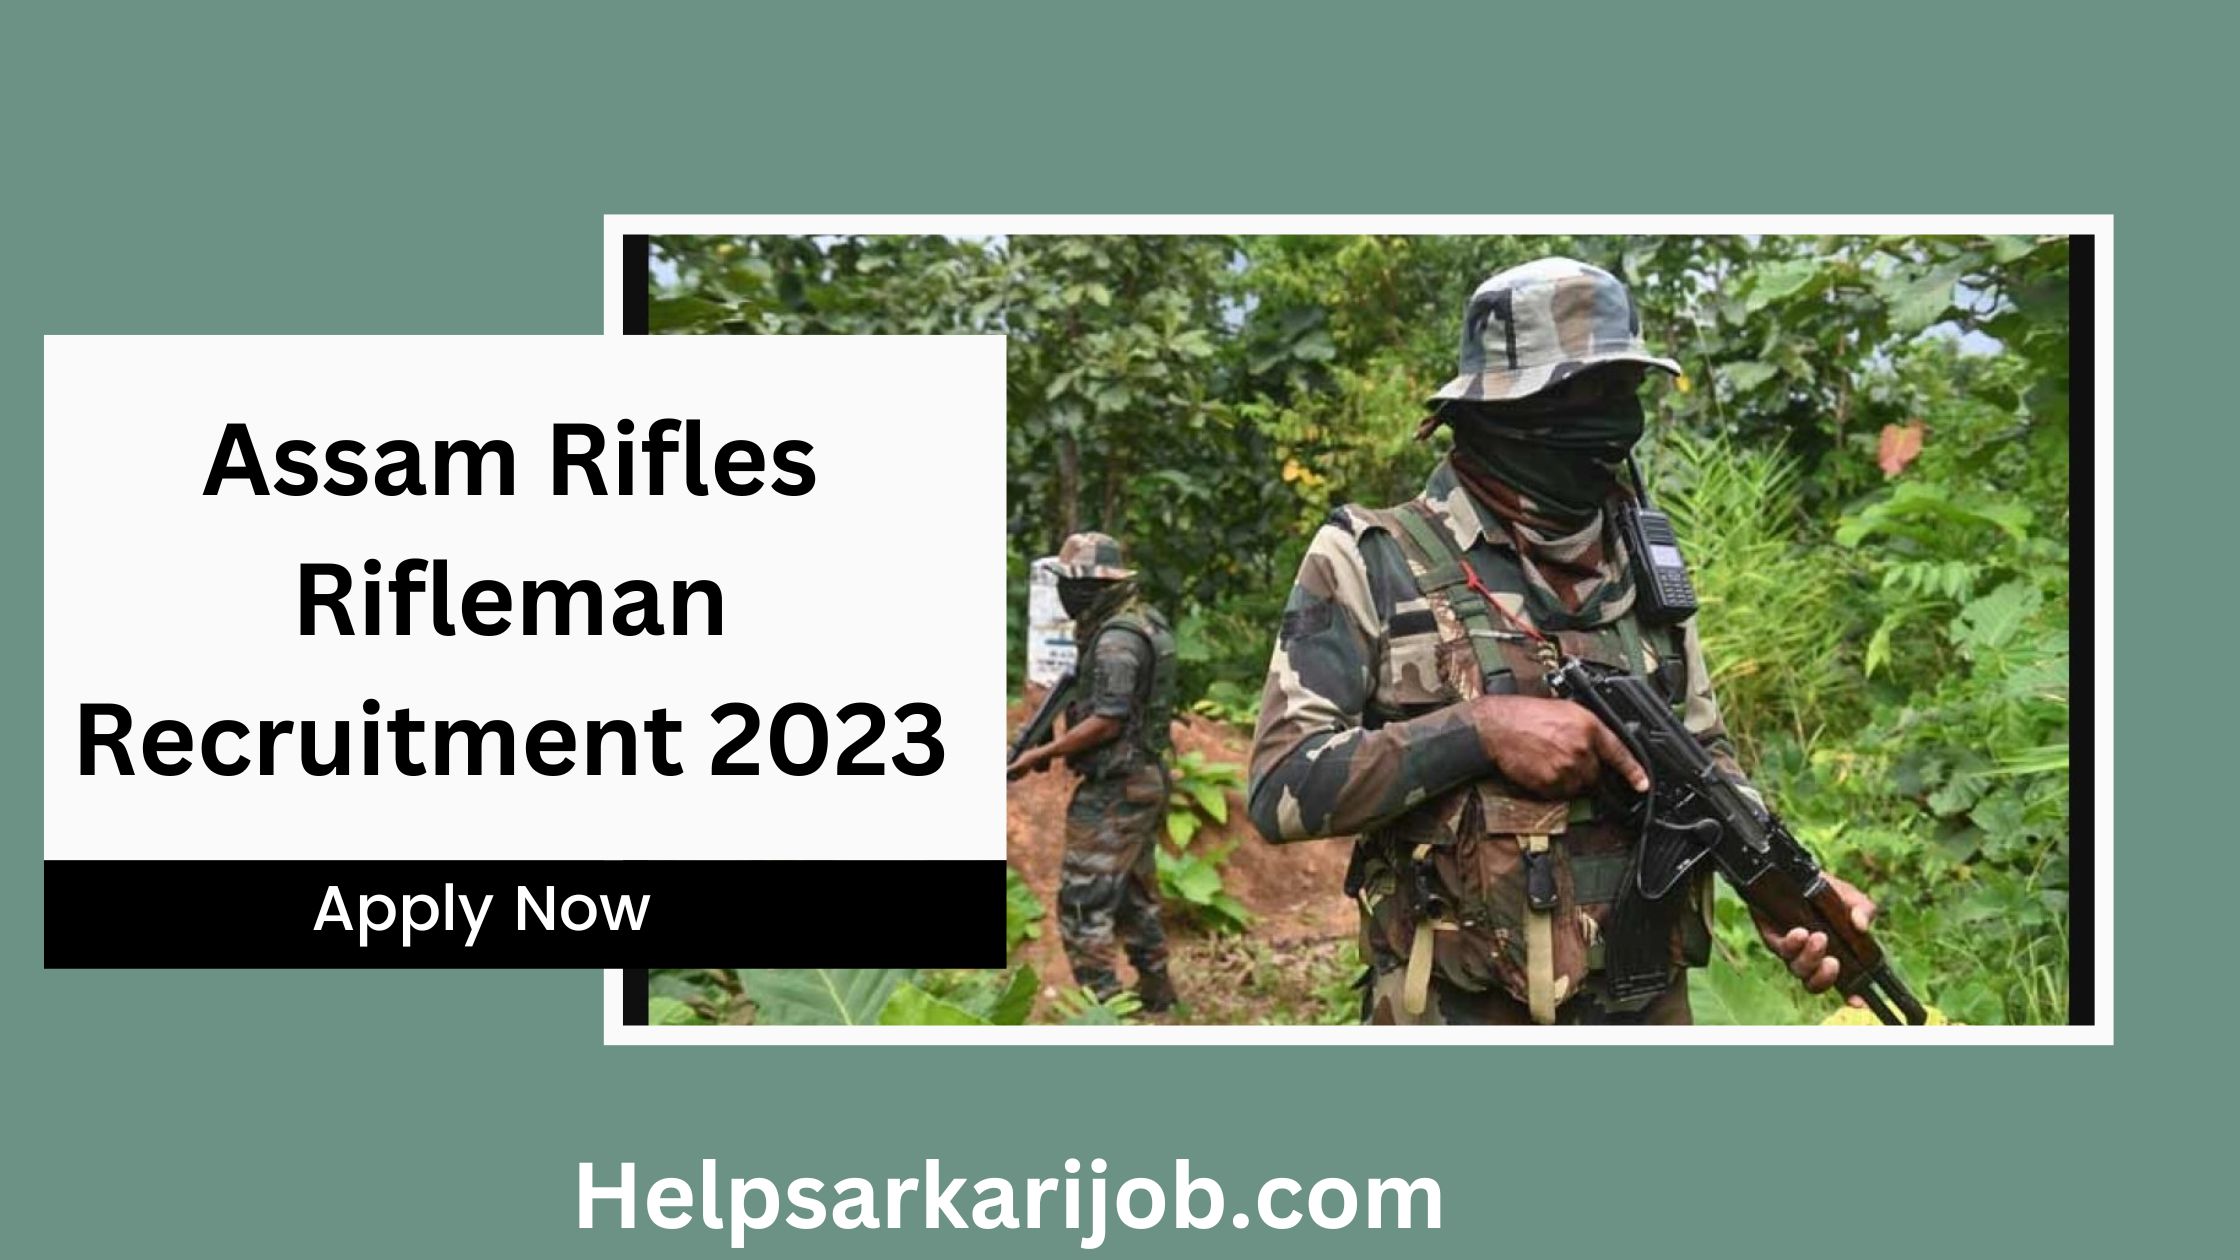 Assam Rifles Rifleman Recruitment 2023